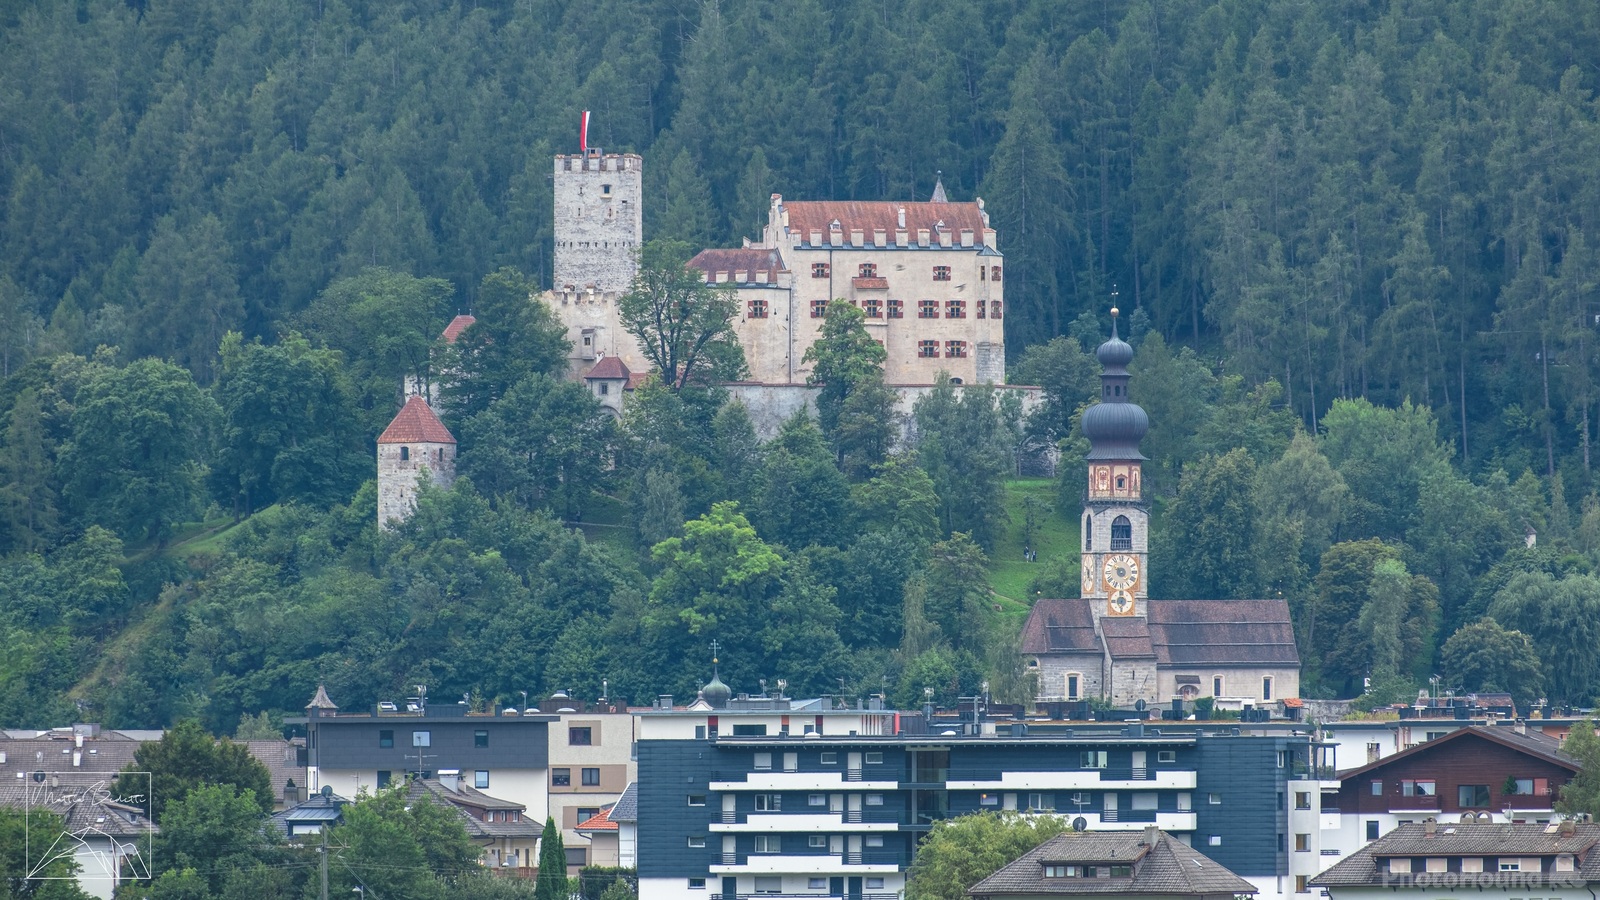 Image of Aufhofen (Villa Santa Caterina) - Viewpoint over Bruneck (Brunico) by Mattia Bedetti